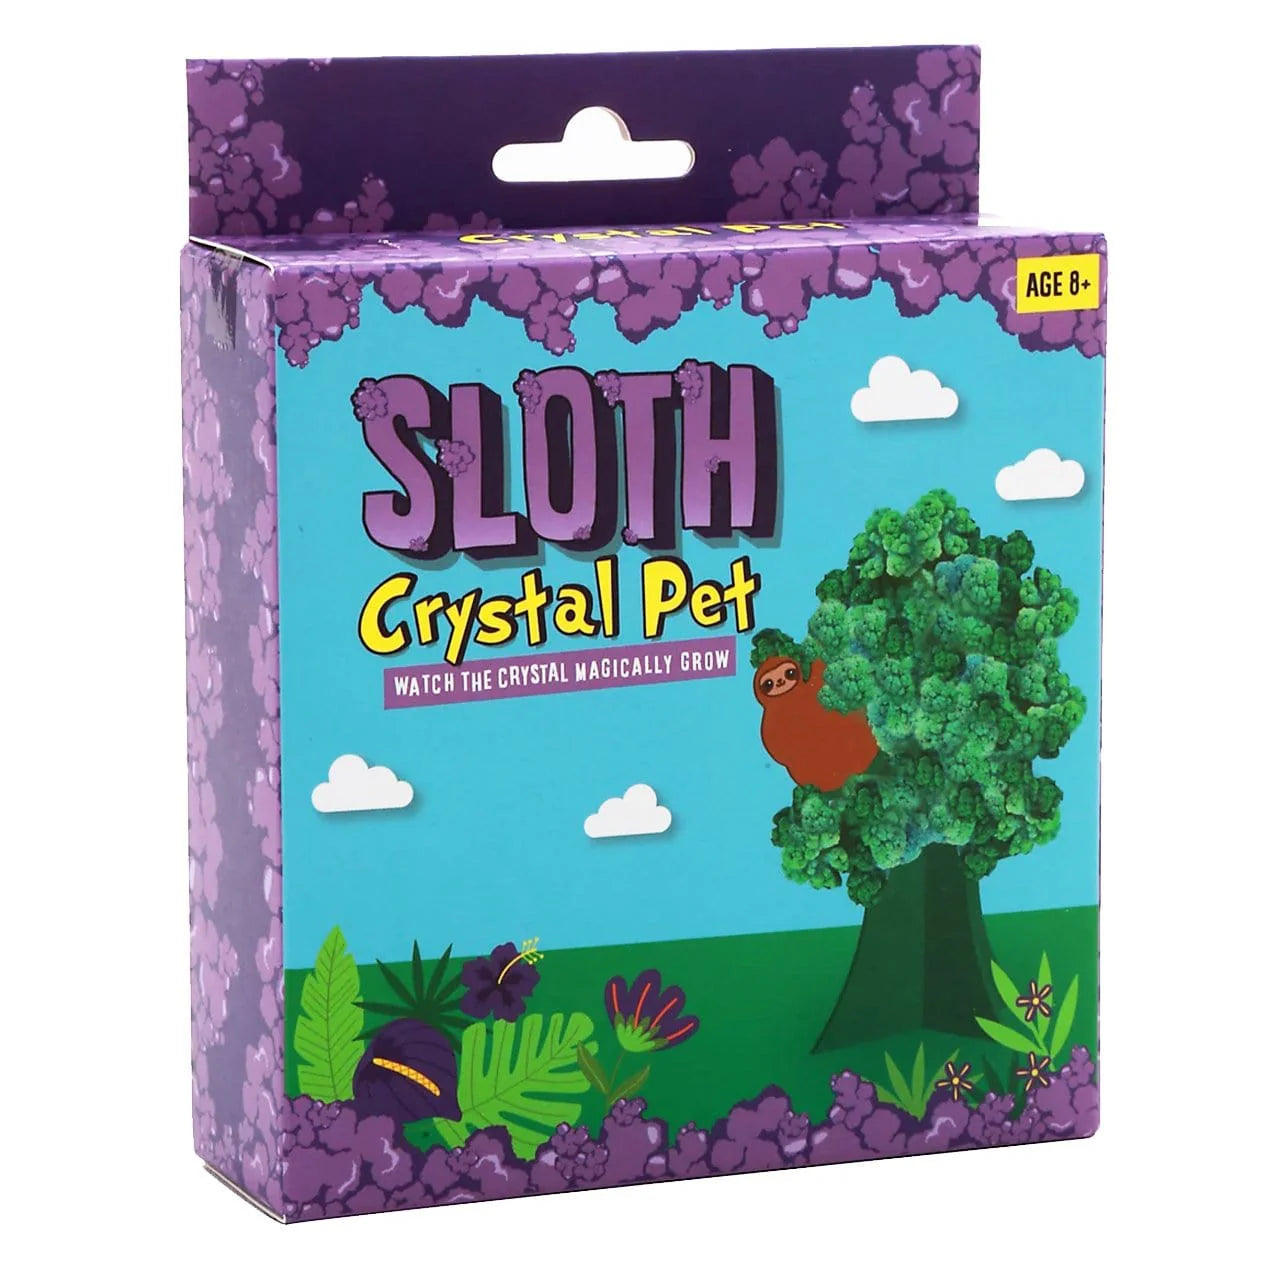 Pet Sloth Crystal Grow Kit